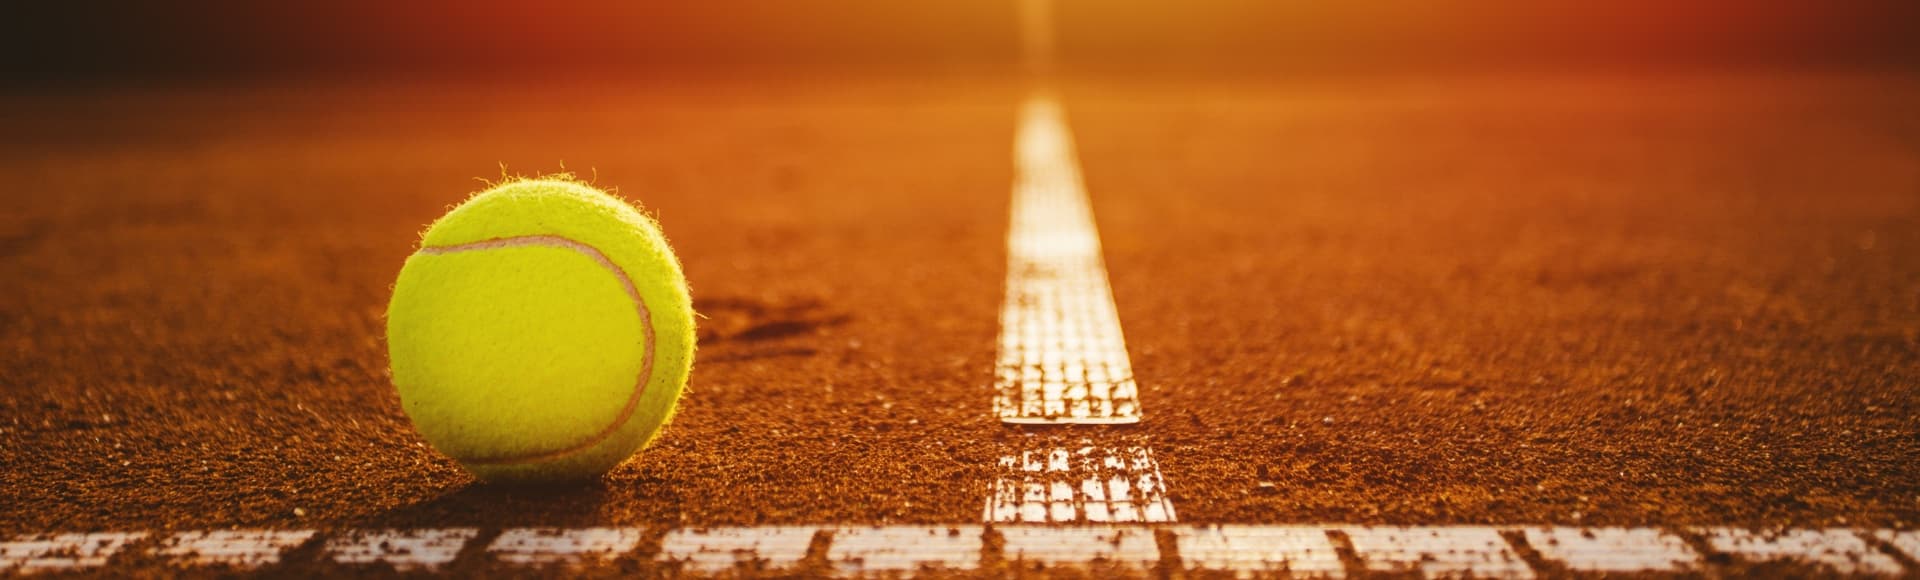 Gelber Tennisball an der Seitenlinie auf einem Tennisplatz mit roter Asche